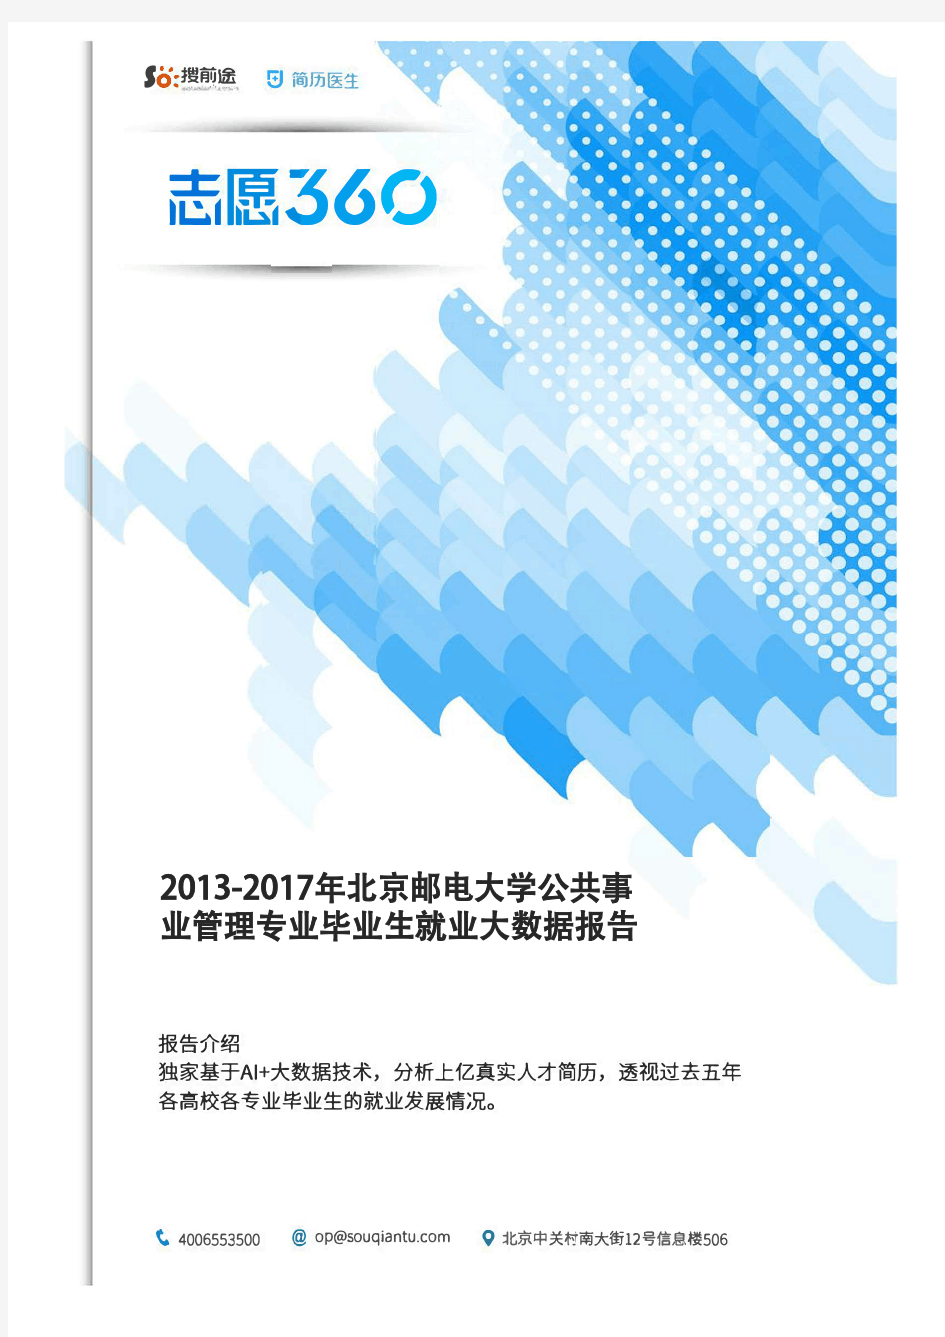 2013-2017年北京邮电大学公共事业管理专业毕业生就业大数据报告